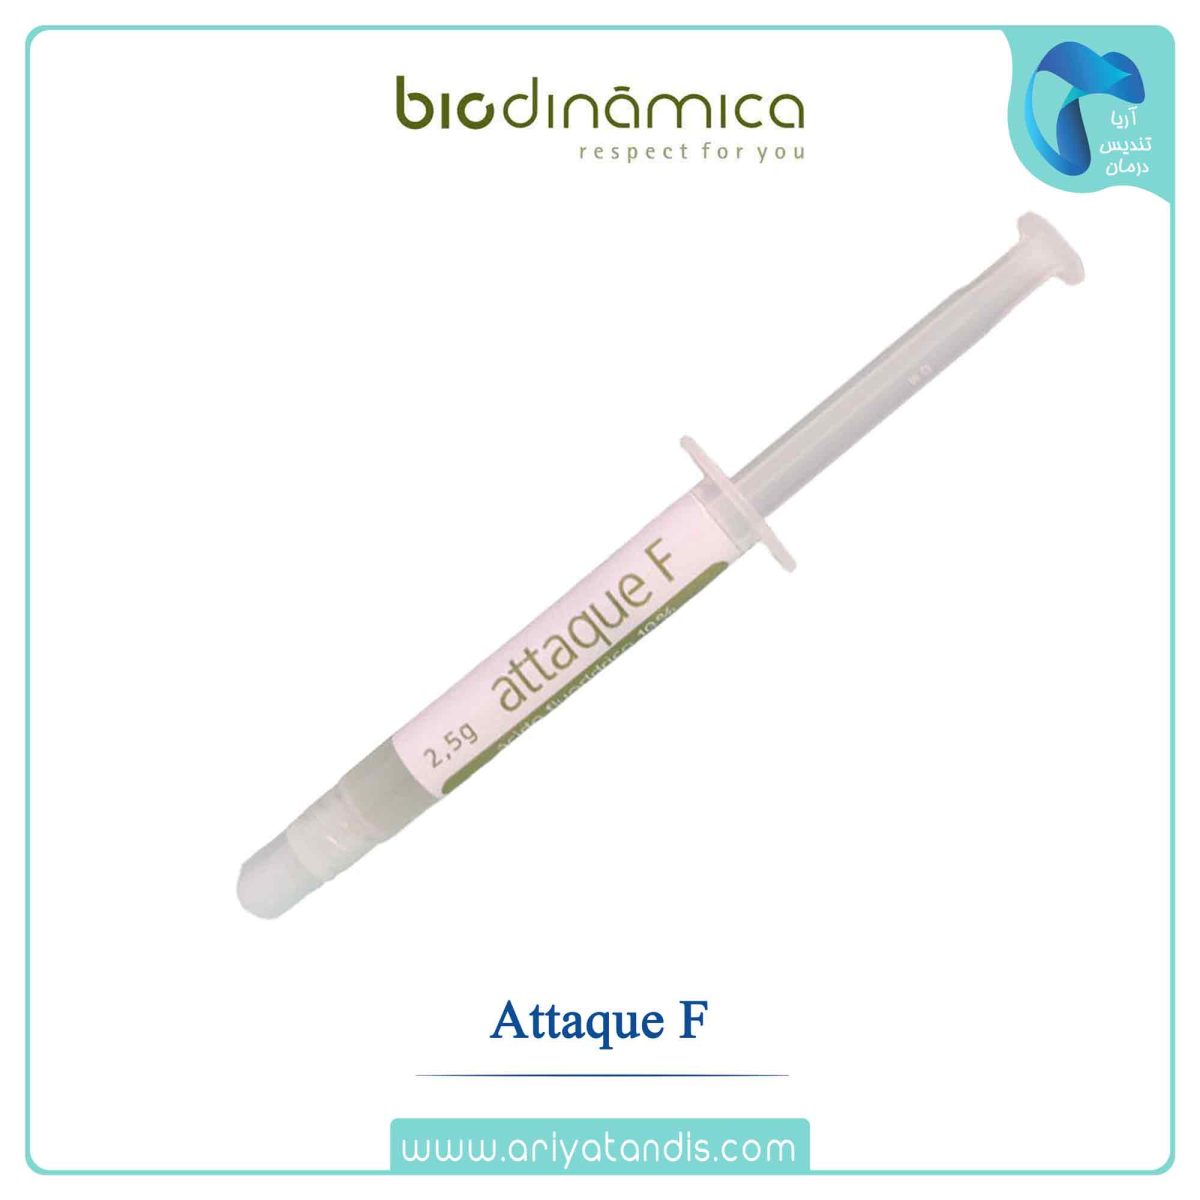 قیمت اسید هیدروفلوئوریک 10% ،Biodinamica Attaque F